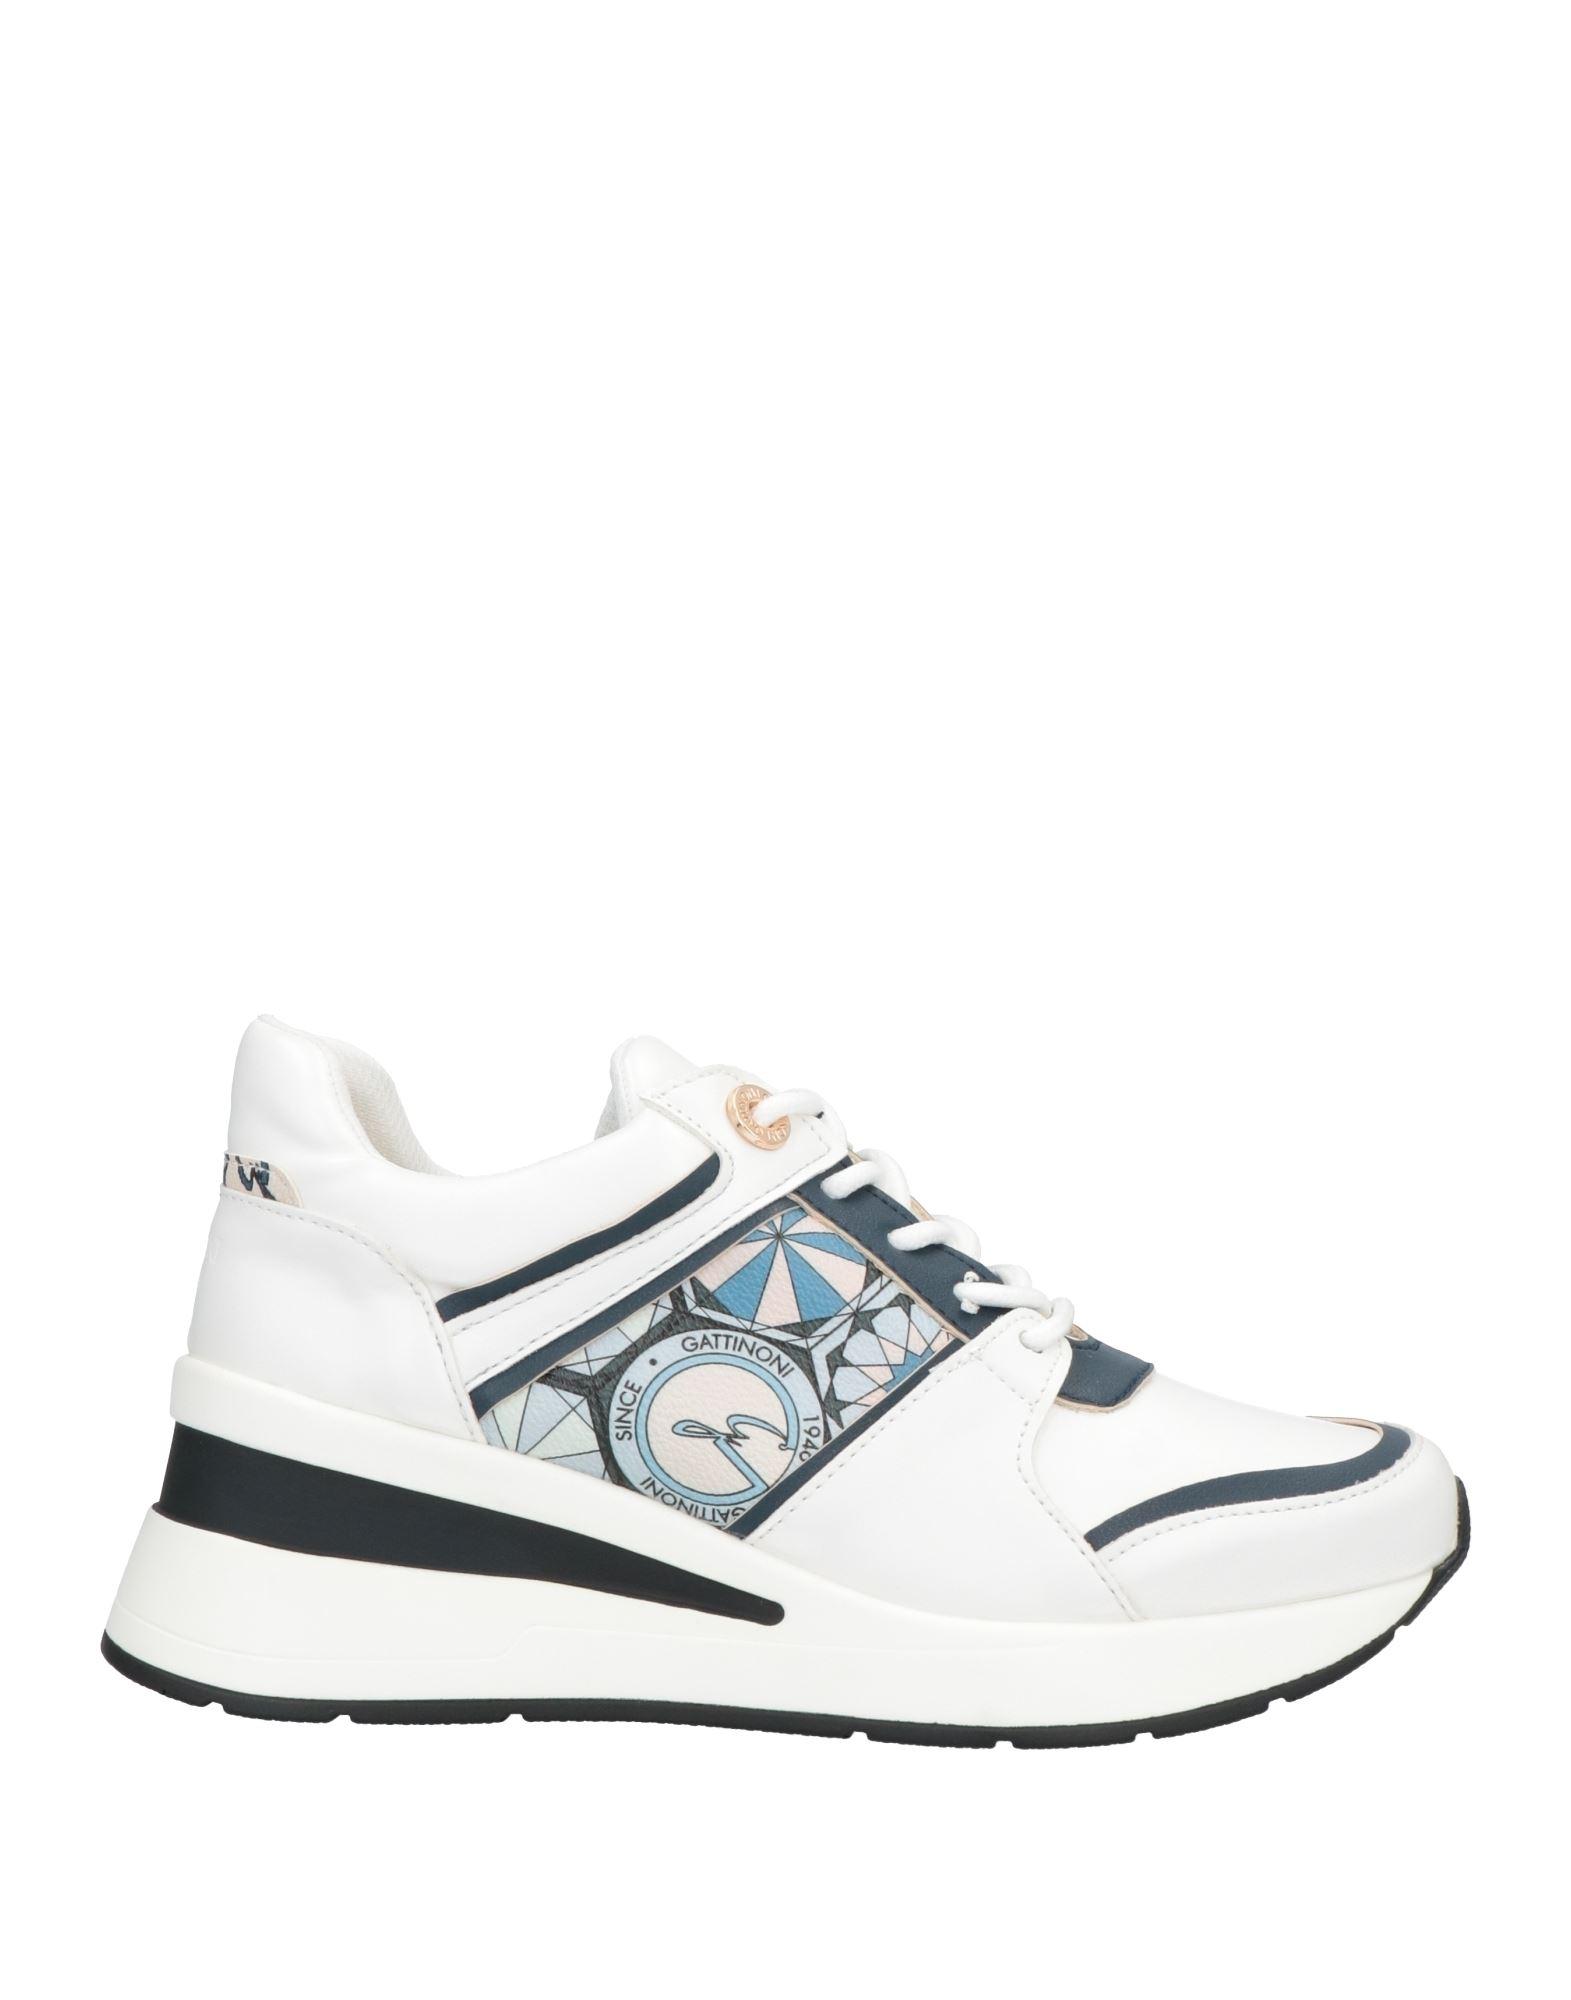 Gattinoni Sneakers in White | Lyst